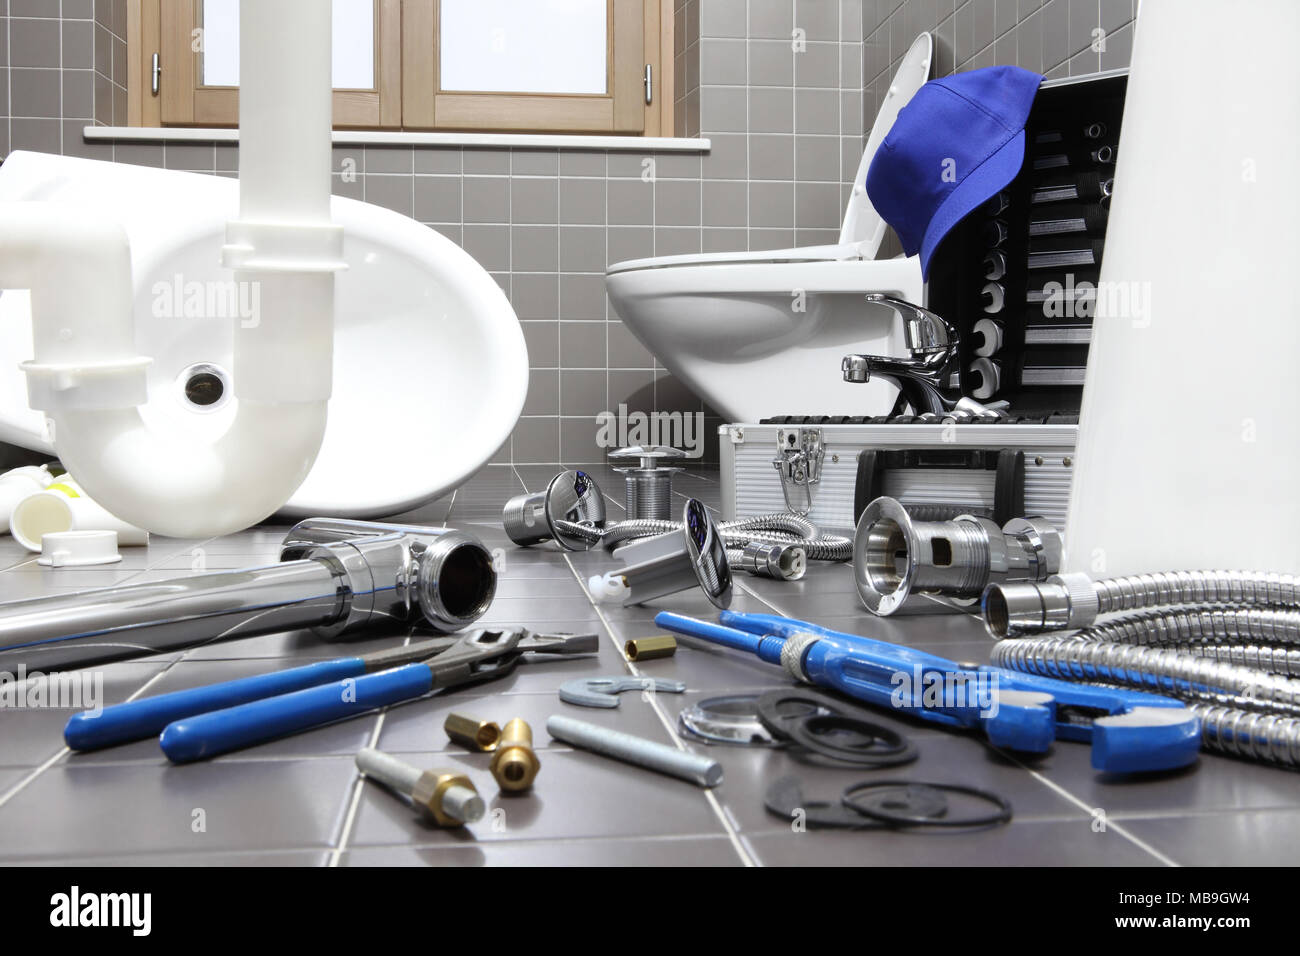 N/S Clés à tube pour robinets, clés à tube classique, clé pour tuyau de  robinet, pour robinet de cuisine et salle de bain, outils d'installation et  de réparation : : Bricolage